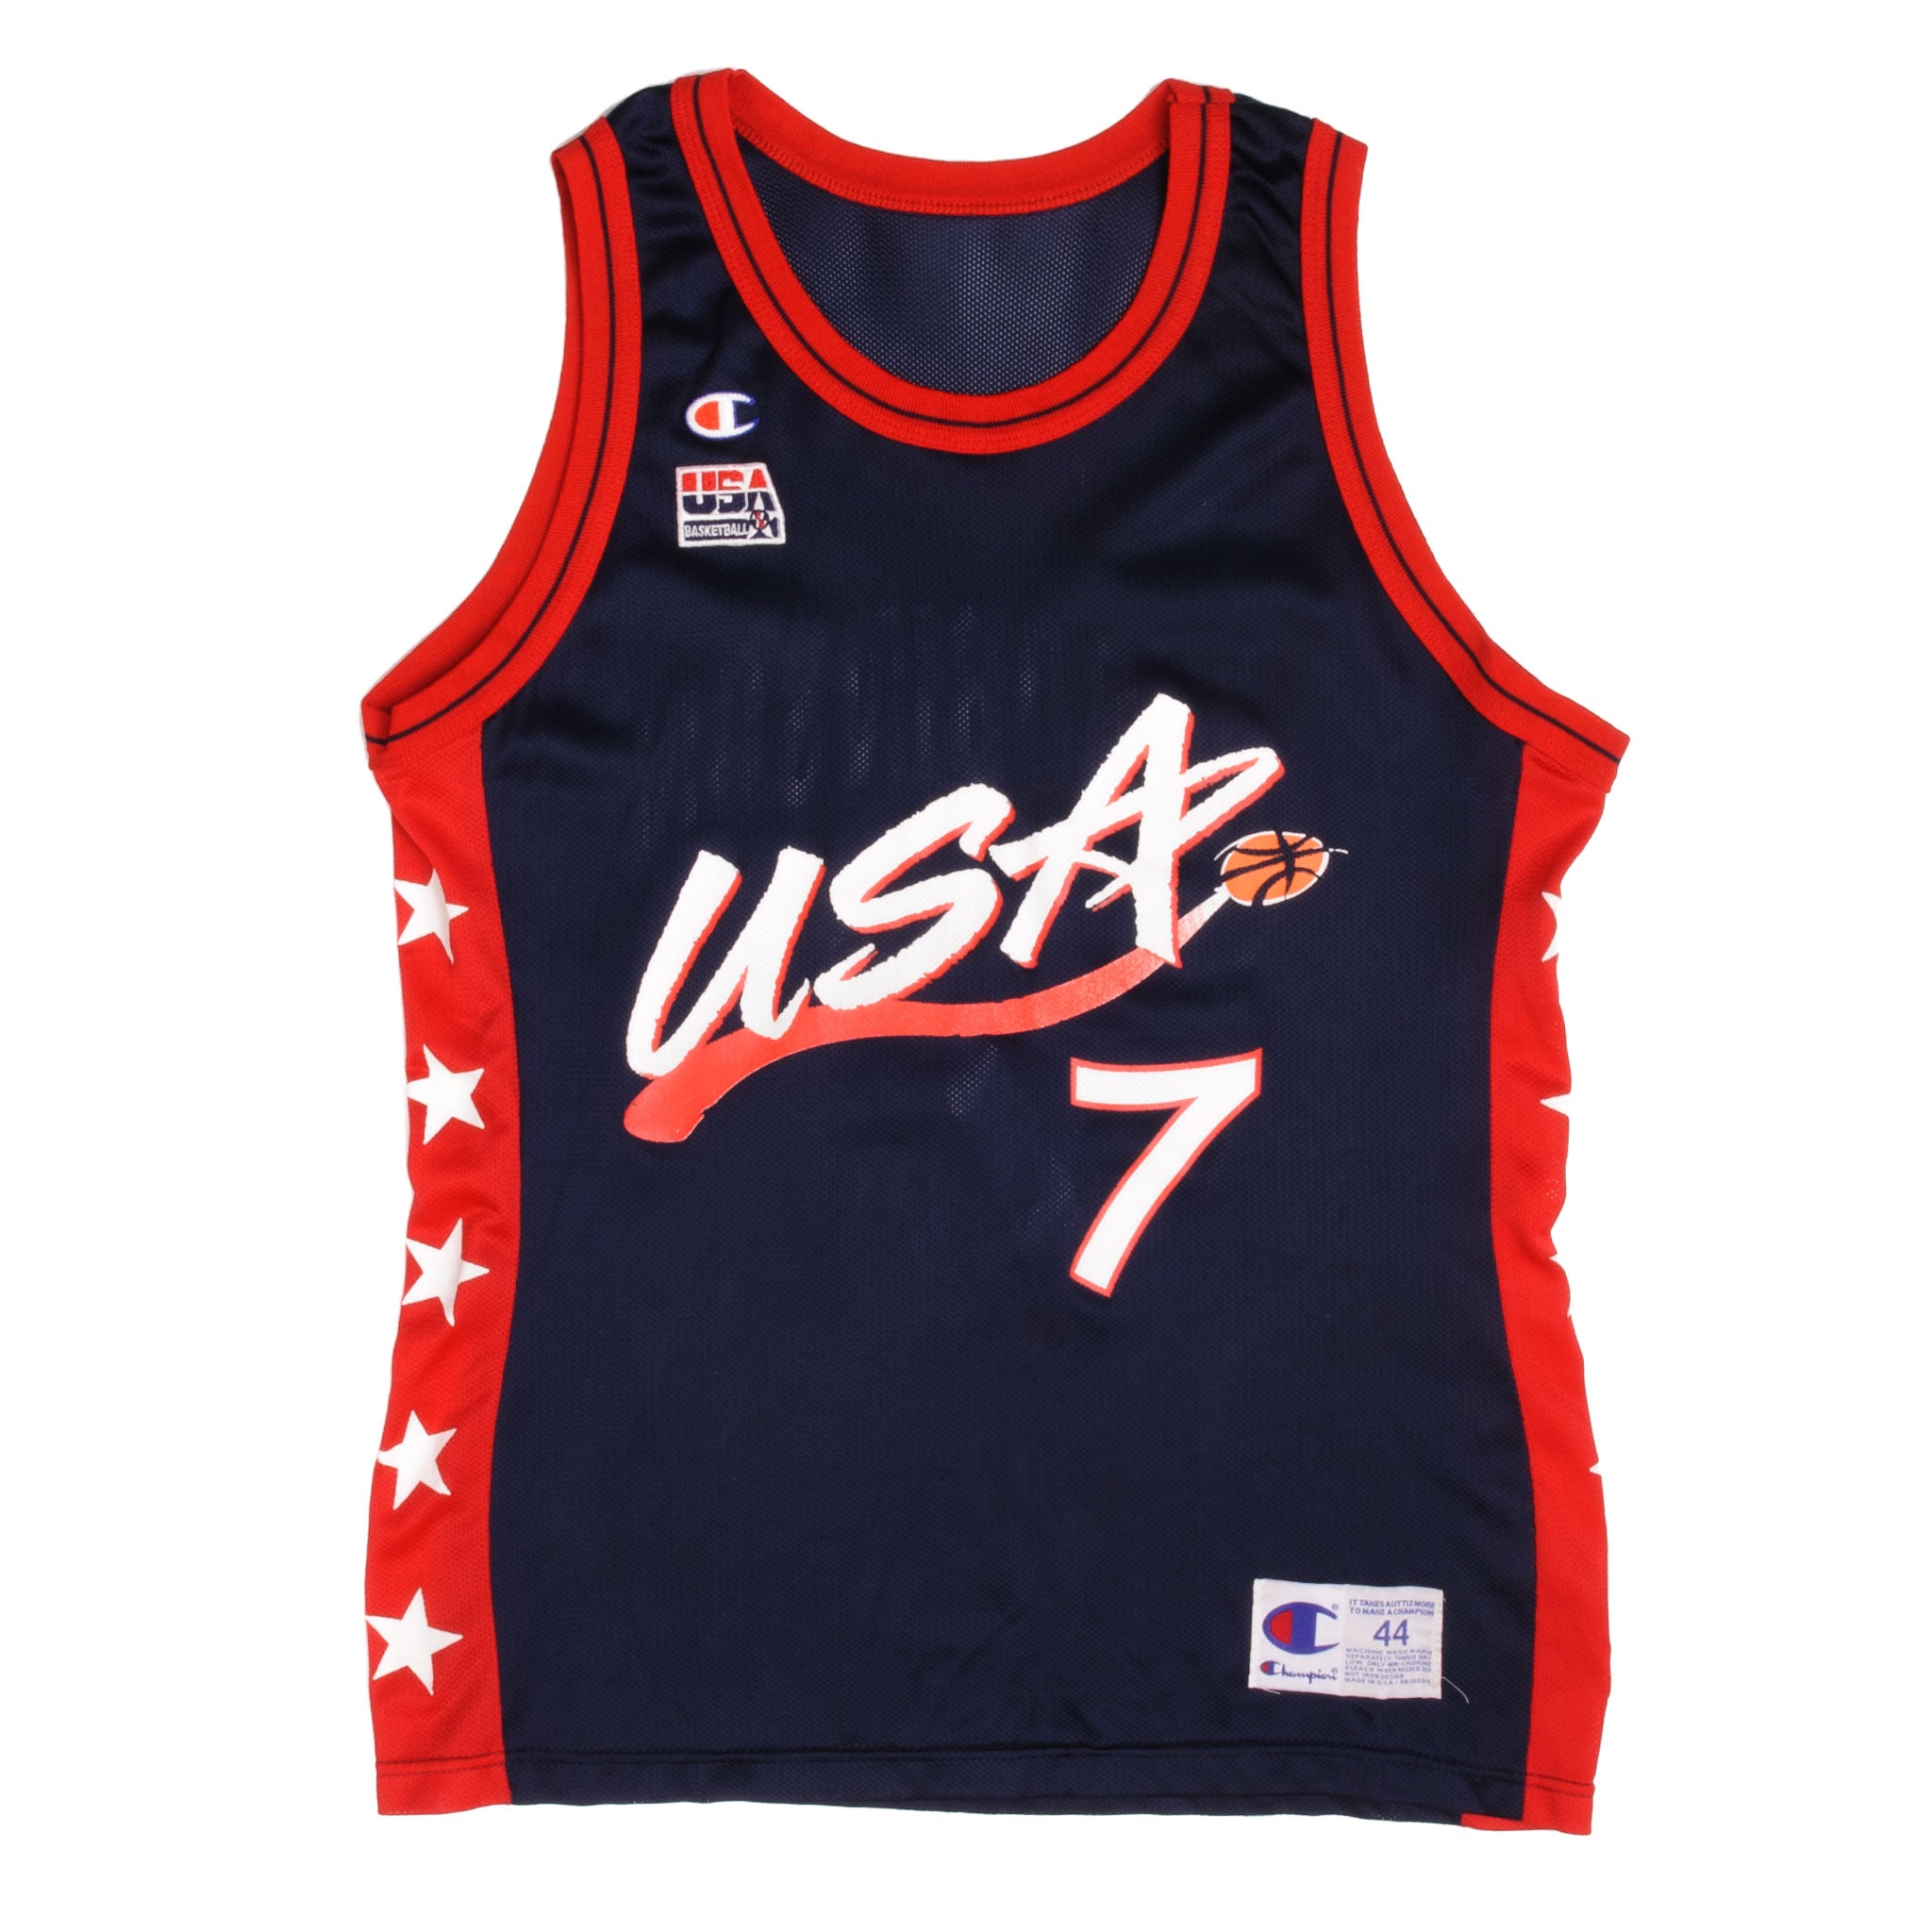 CHAMPION USA BASKETBALL D ROBINSON 7 1996 SIZE LAR – Vintage rare usa